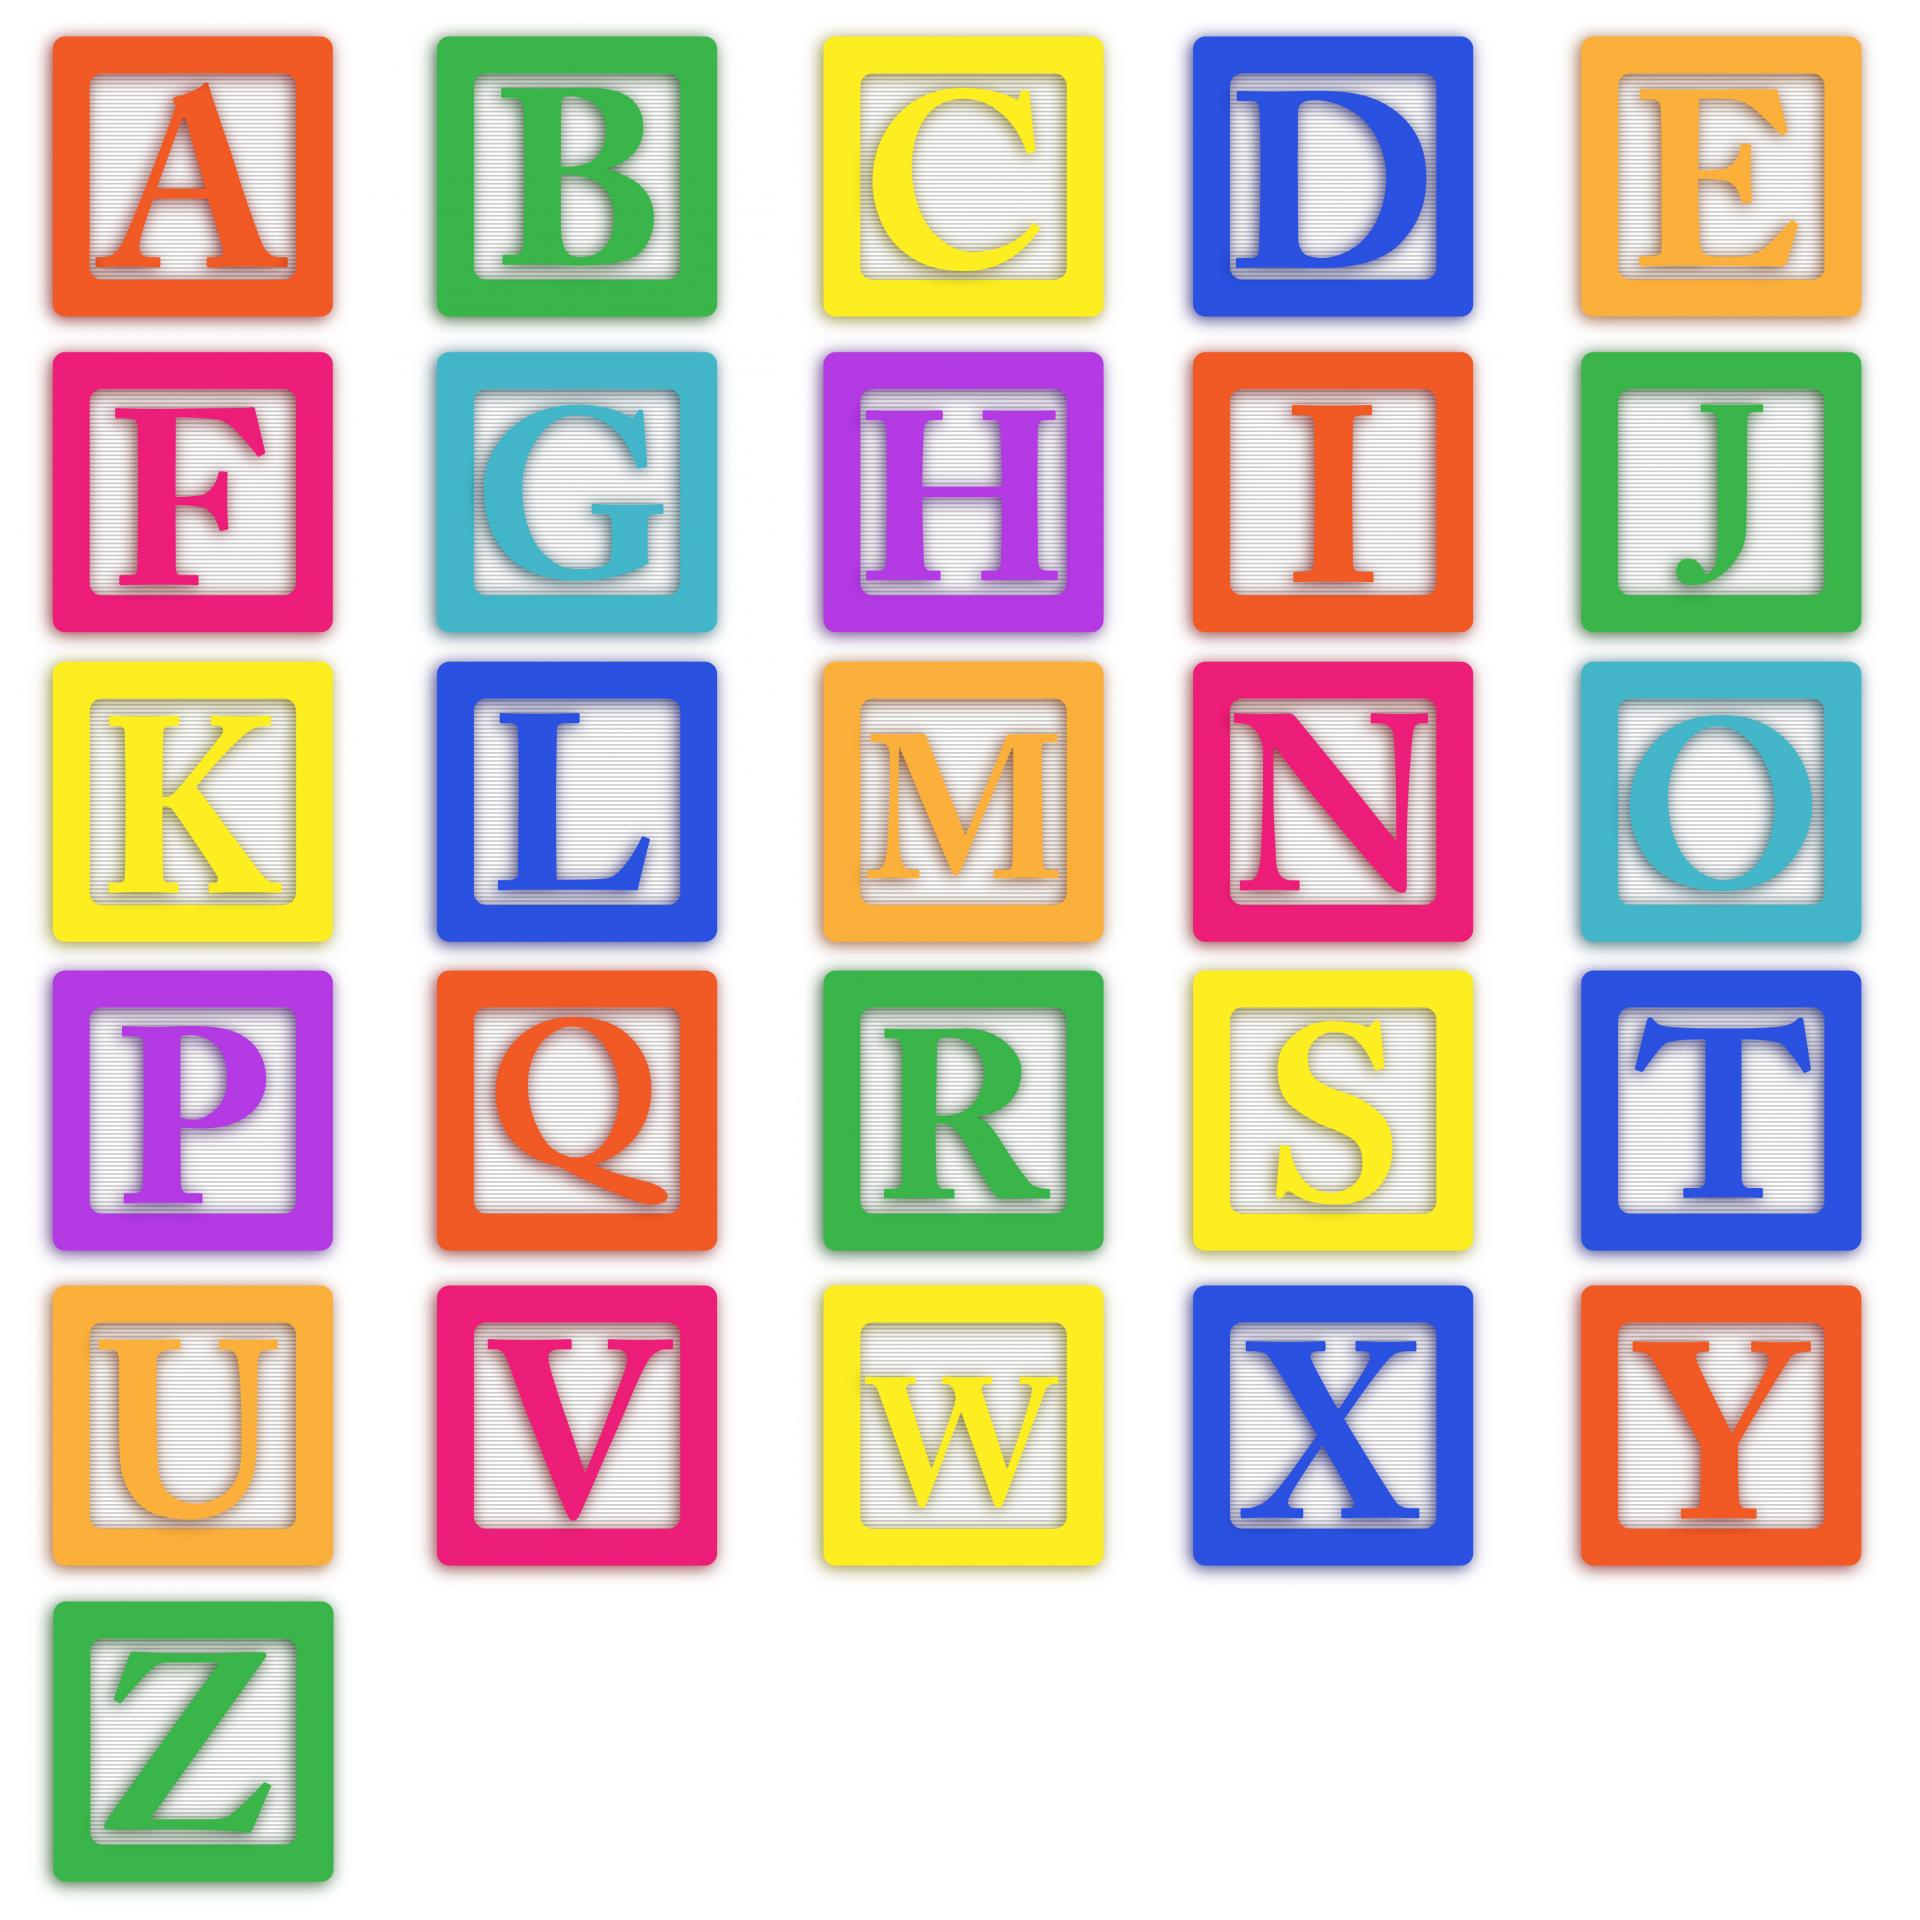 16 Wooden Block Letters Font Images Wooden Alphabet Block Font, Block